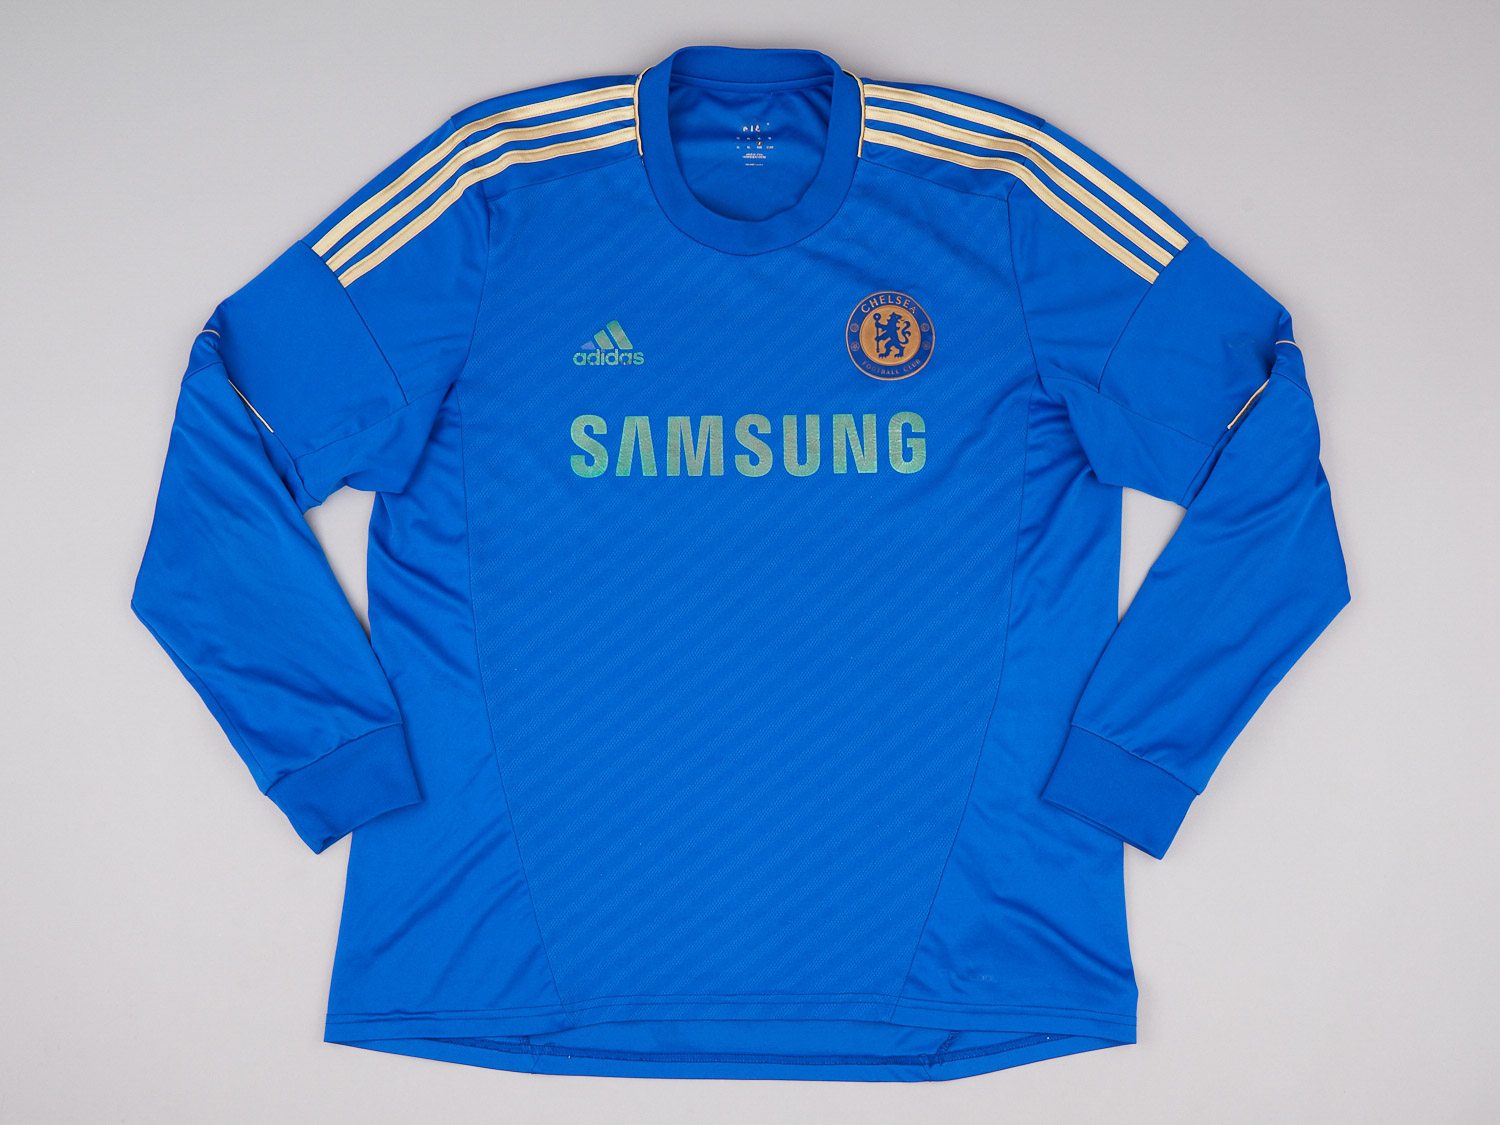 2012-13 Chelsea Home Shirt (Fair)